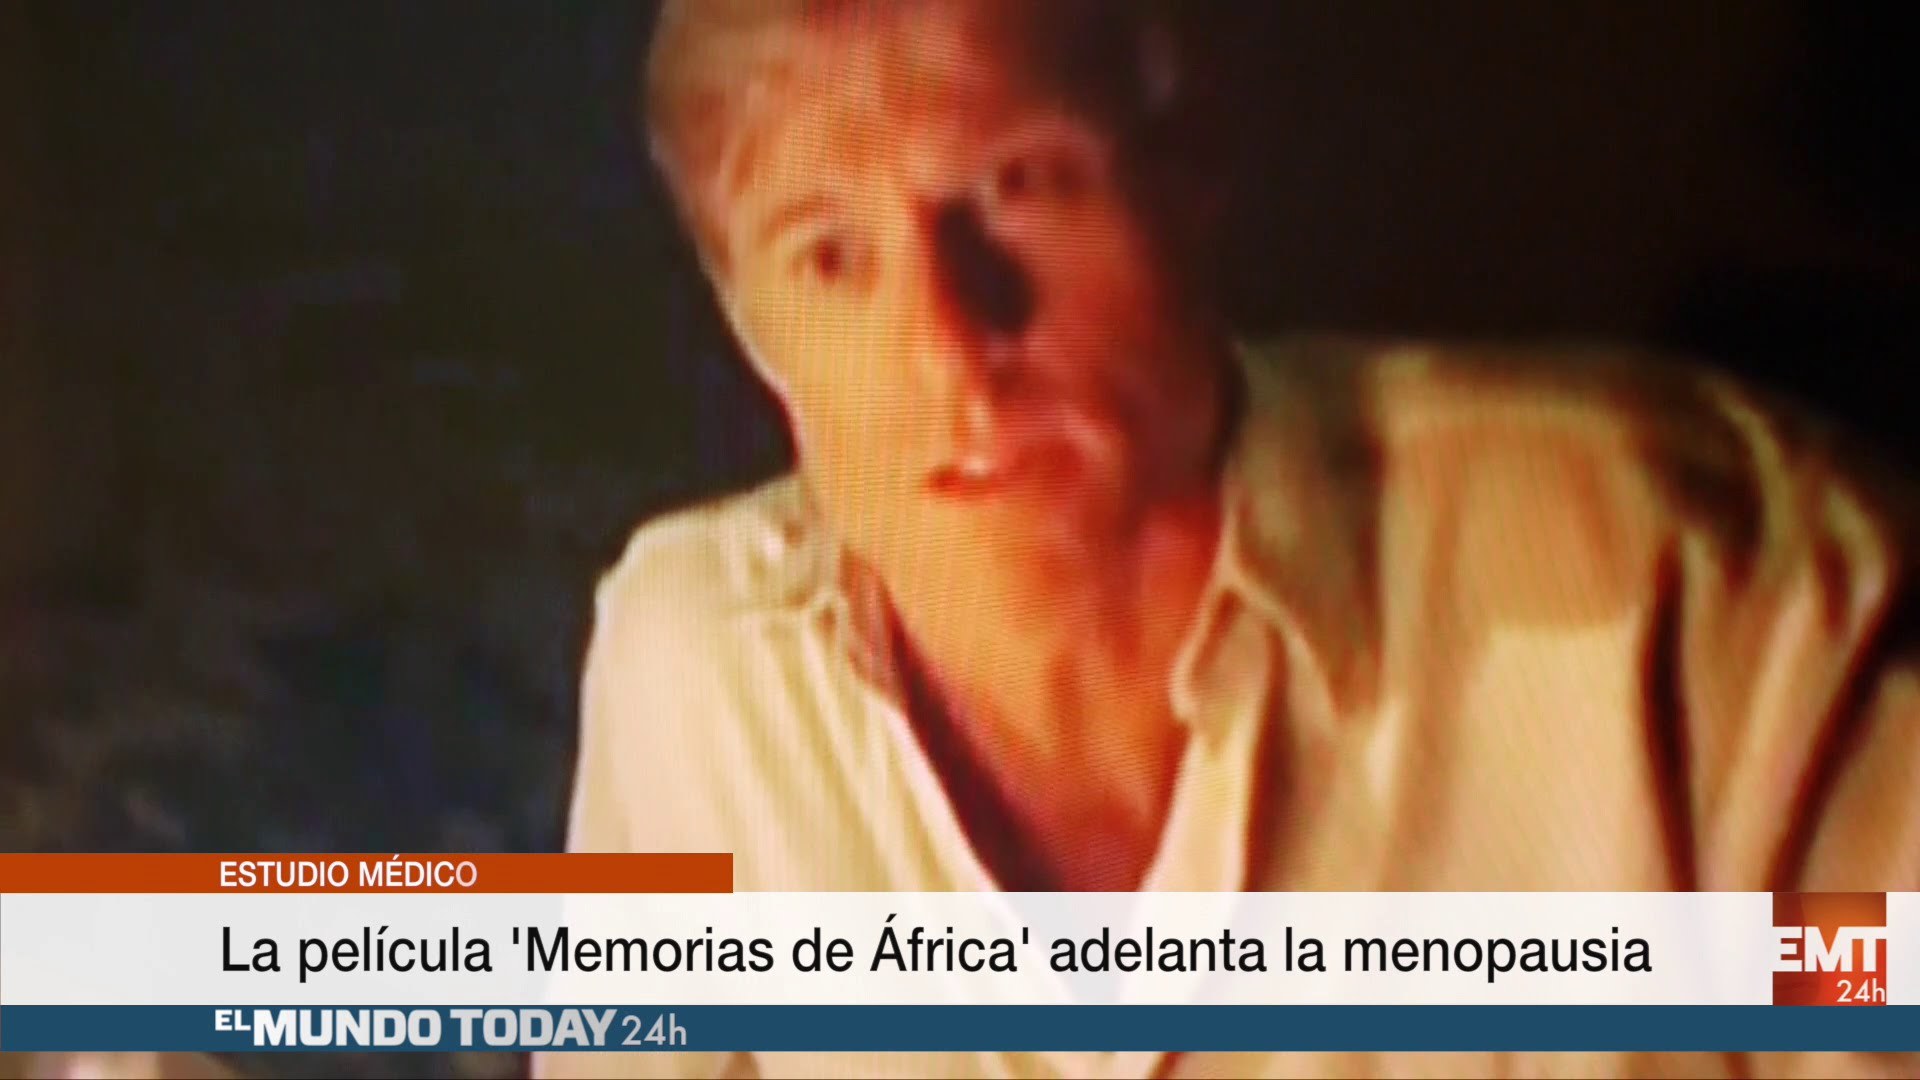 Temporada 1 La película Memorias de África puede adelantar la menopausia